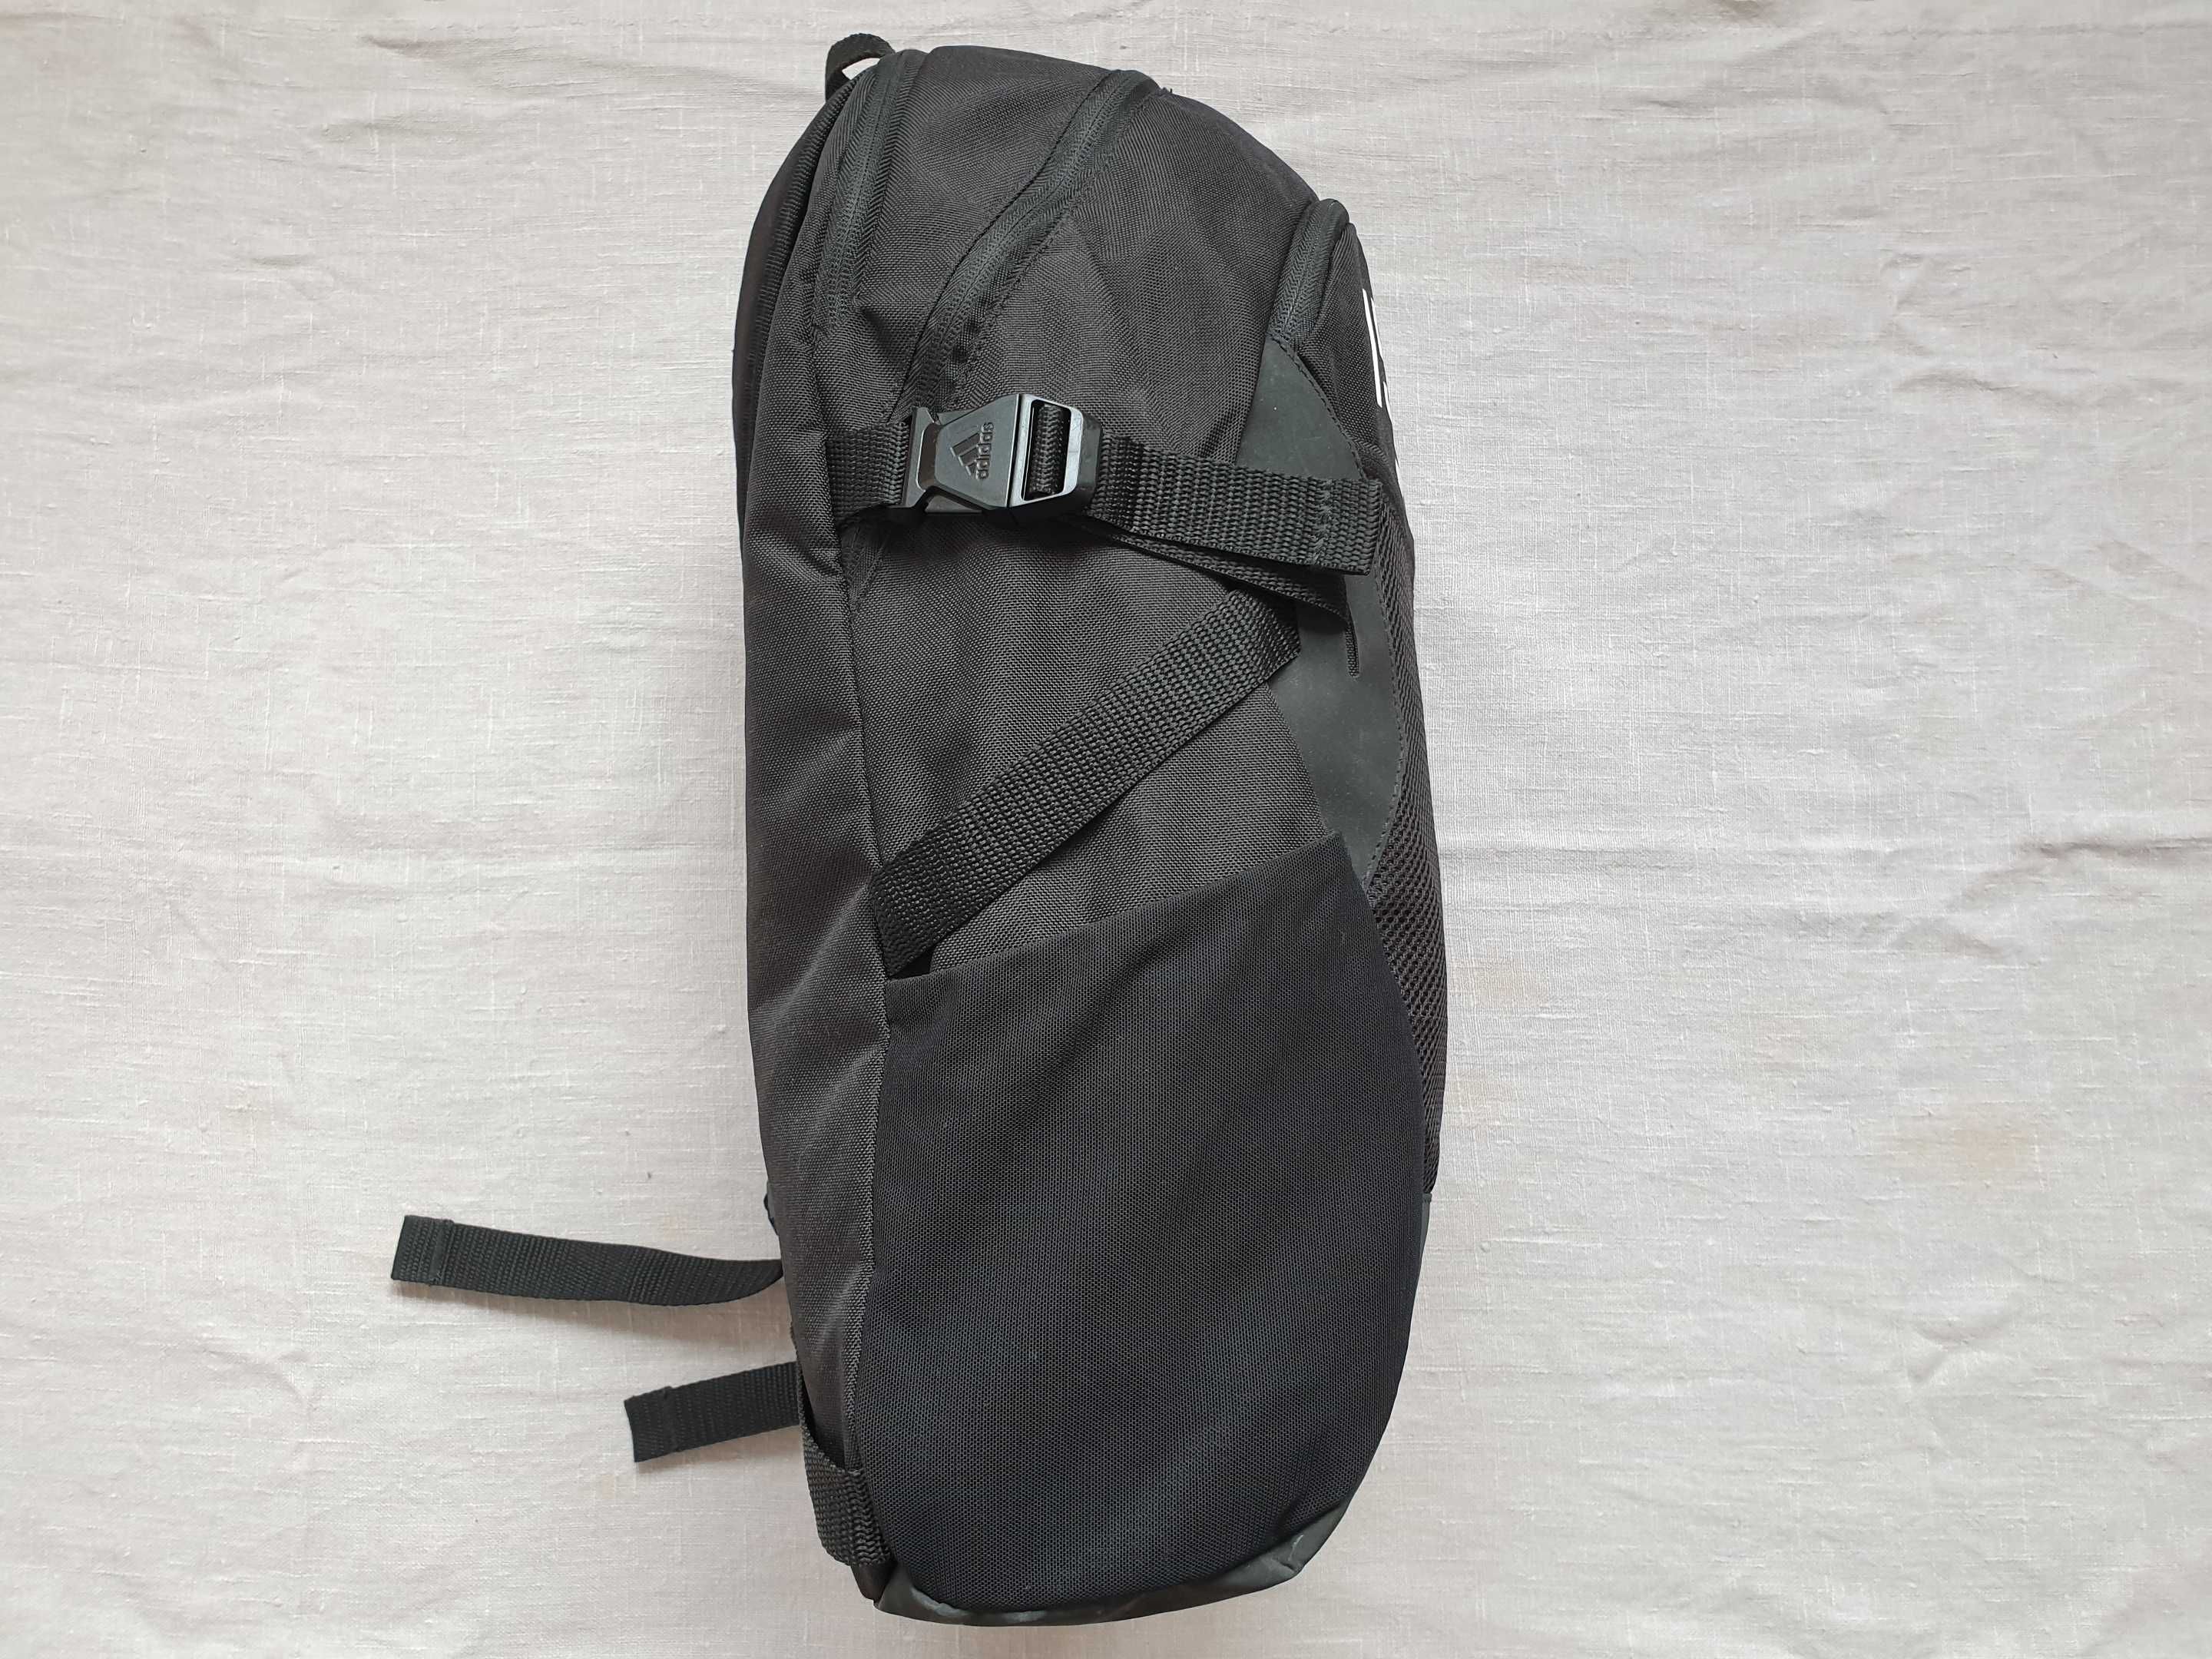 Рюкзак Adidas Tiro Primegreen 25 литров Спортивная сумка